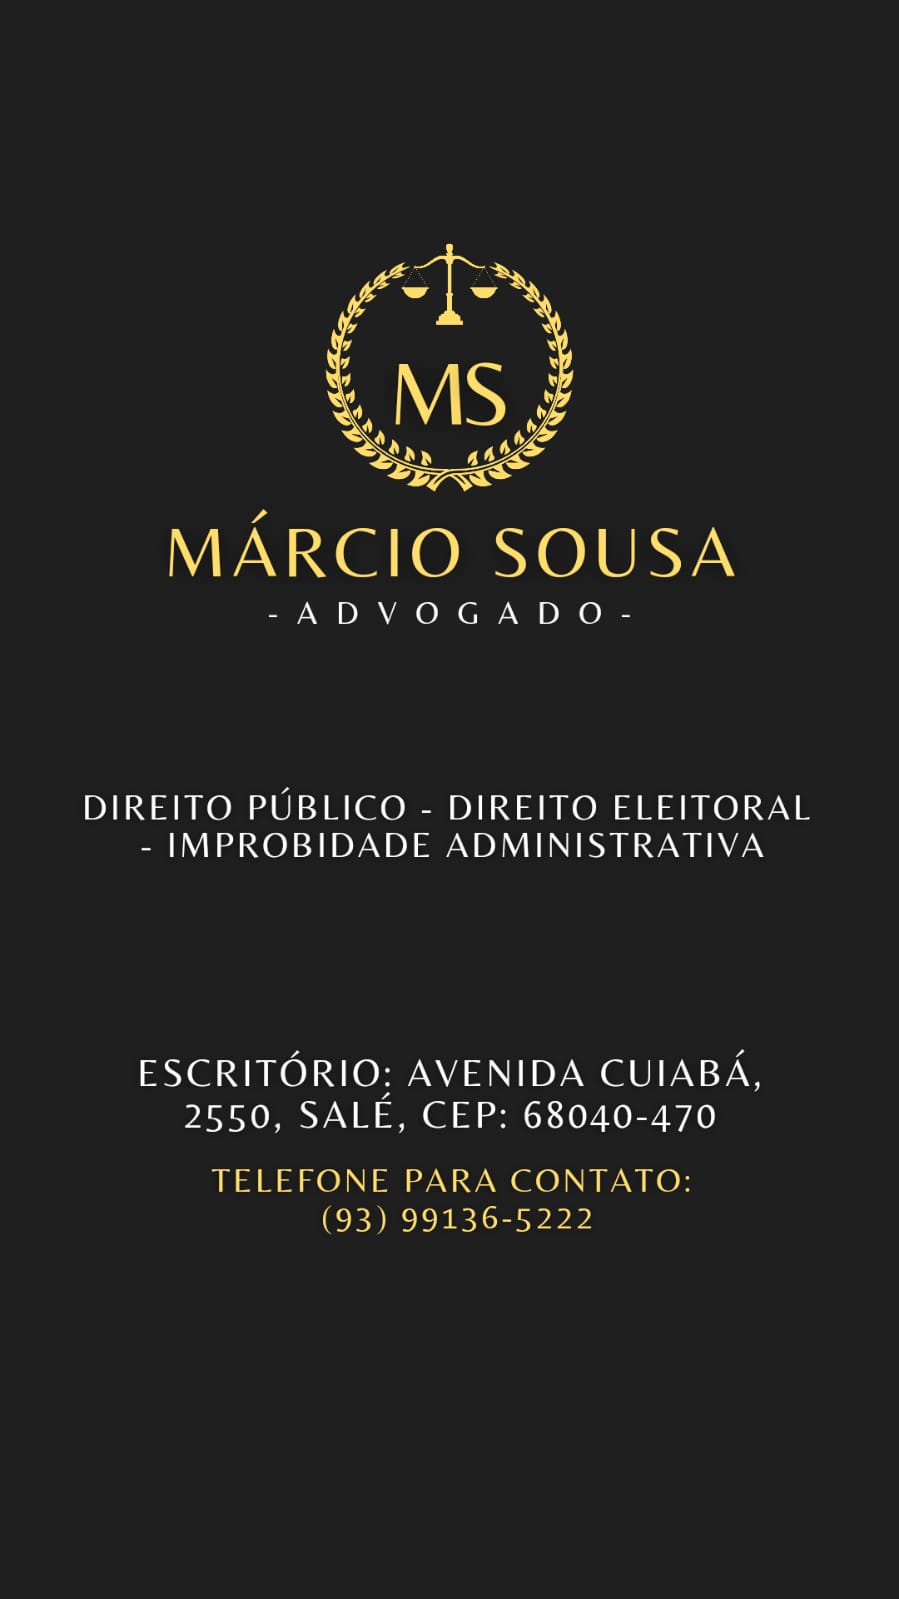 Marcio Sousa